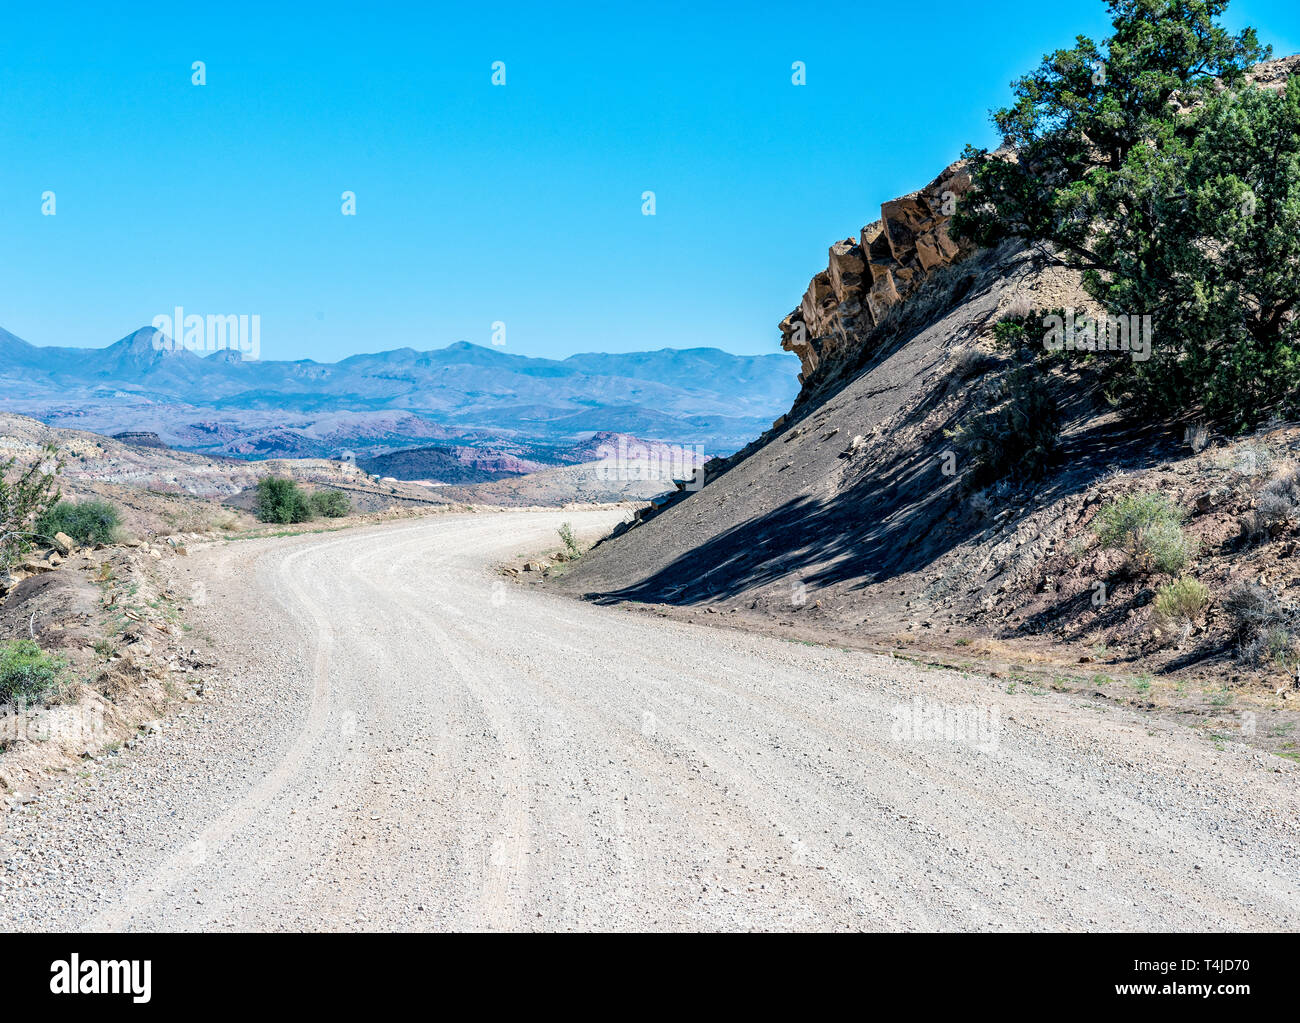 La saleté route tournant autour de colline avec des arbres verts dans paysage de désert sous un ciel bleu. Banque D'Images